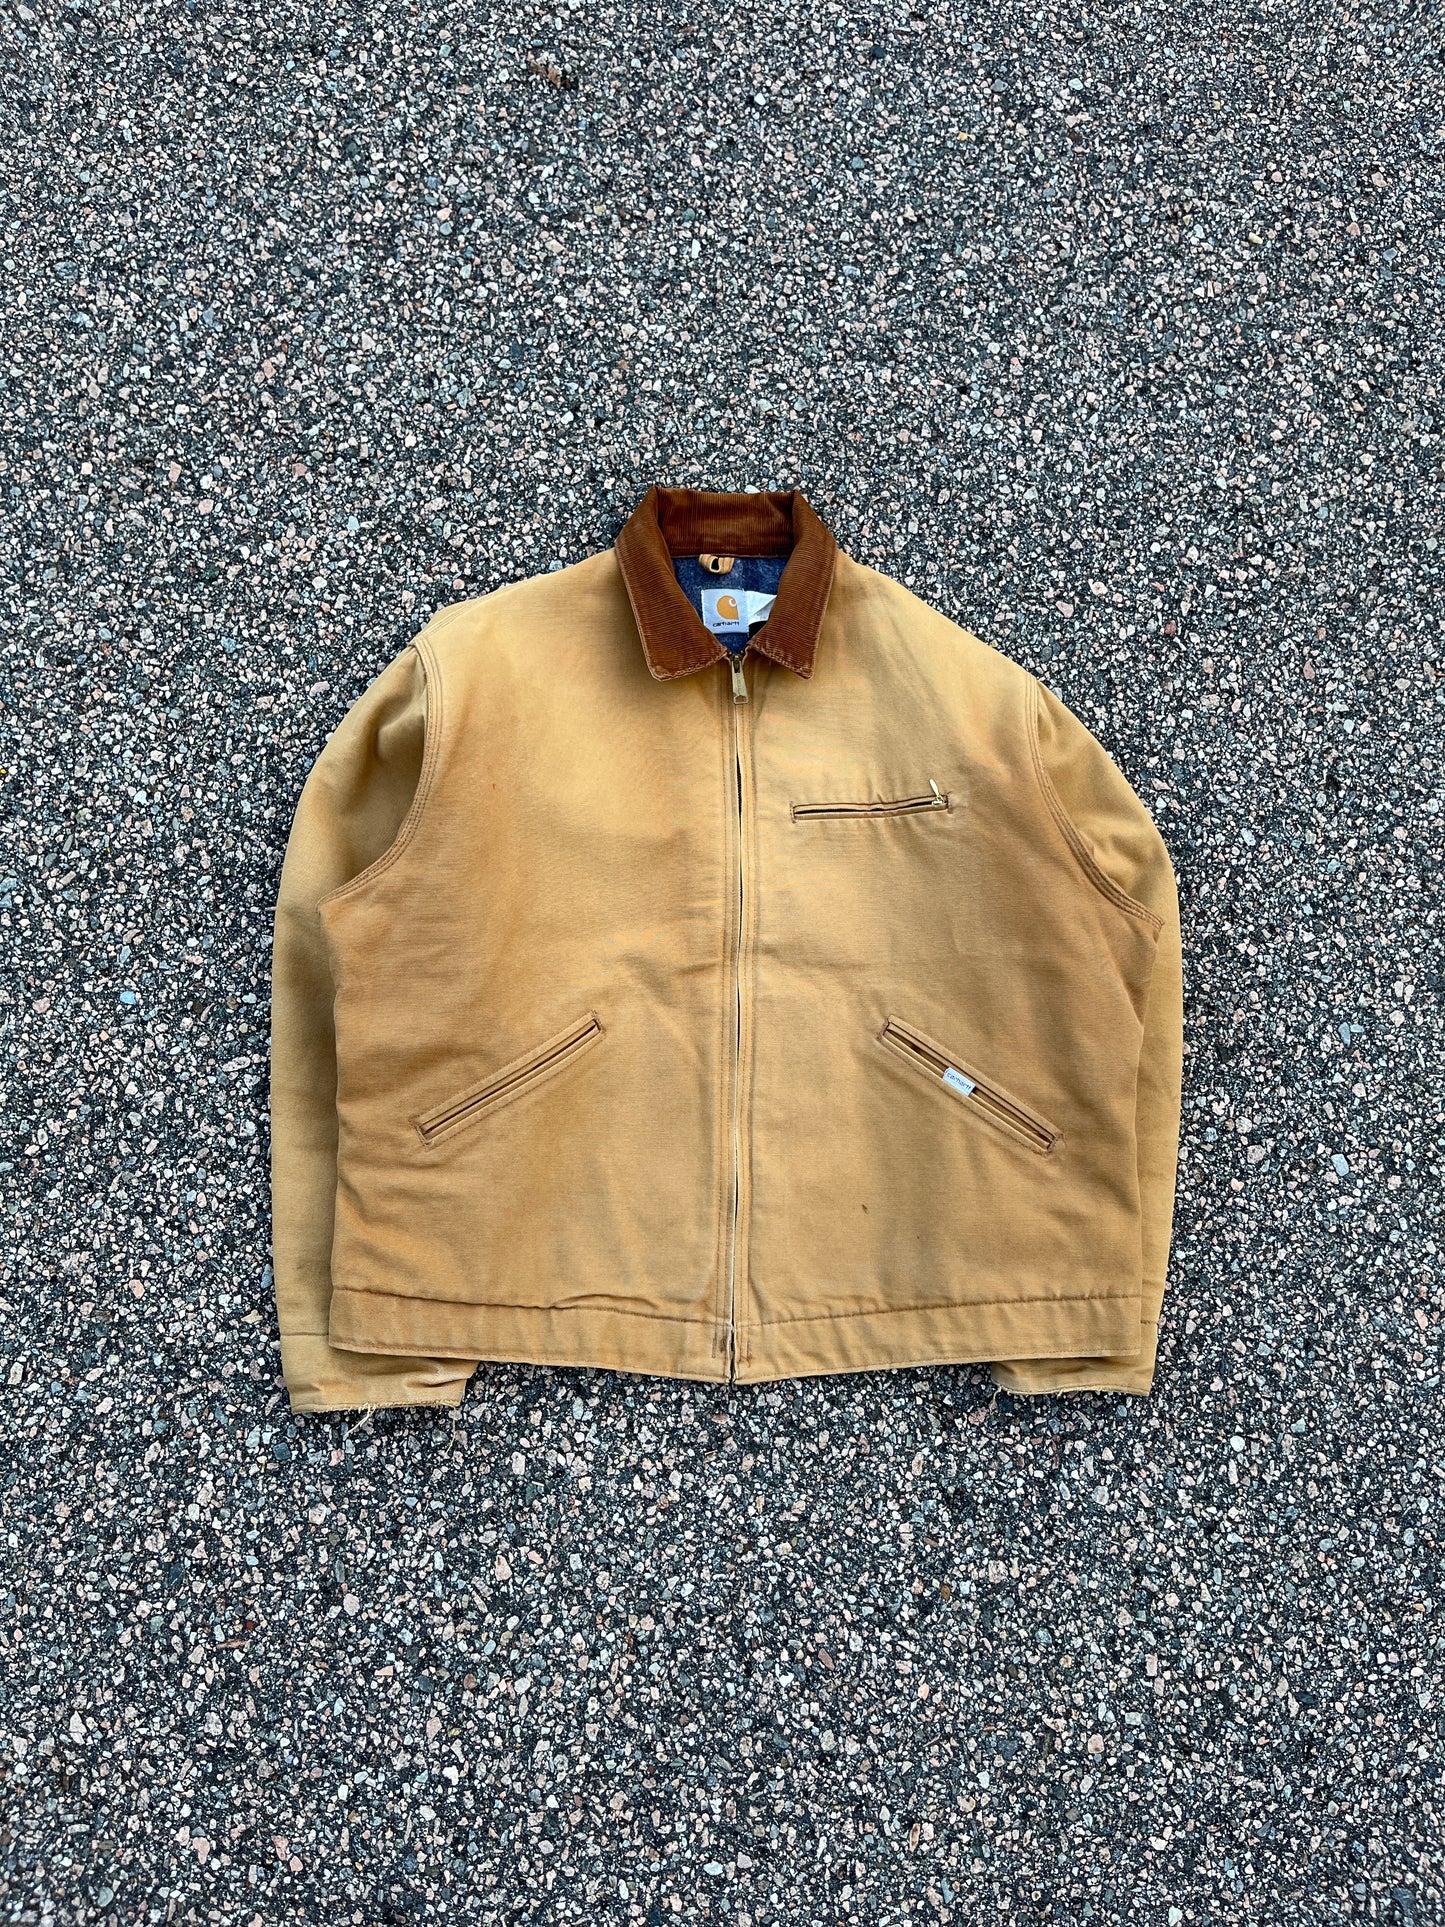 80’s Faded Tan Carhartt Detroit Jacket - Boxy Large